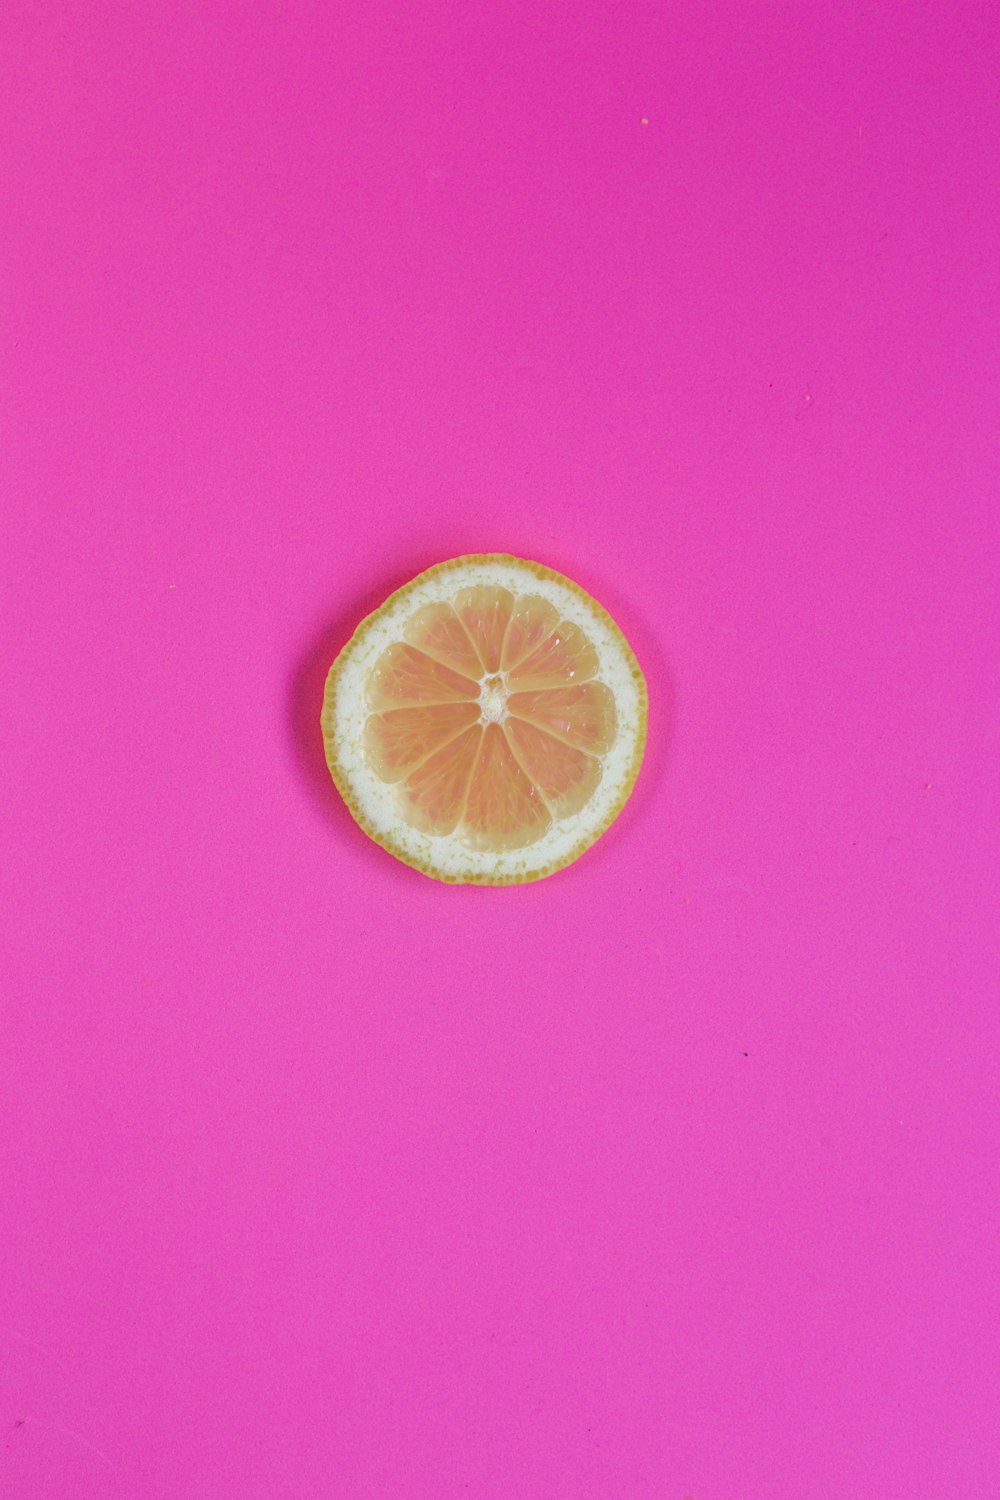 sliced orange fruit on pink surface